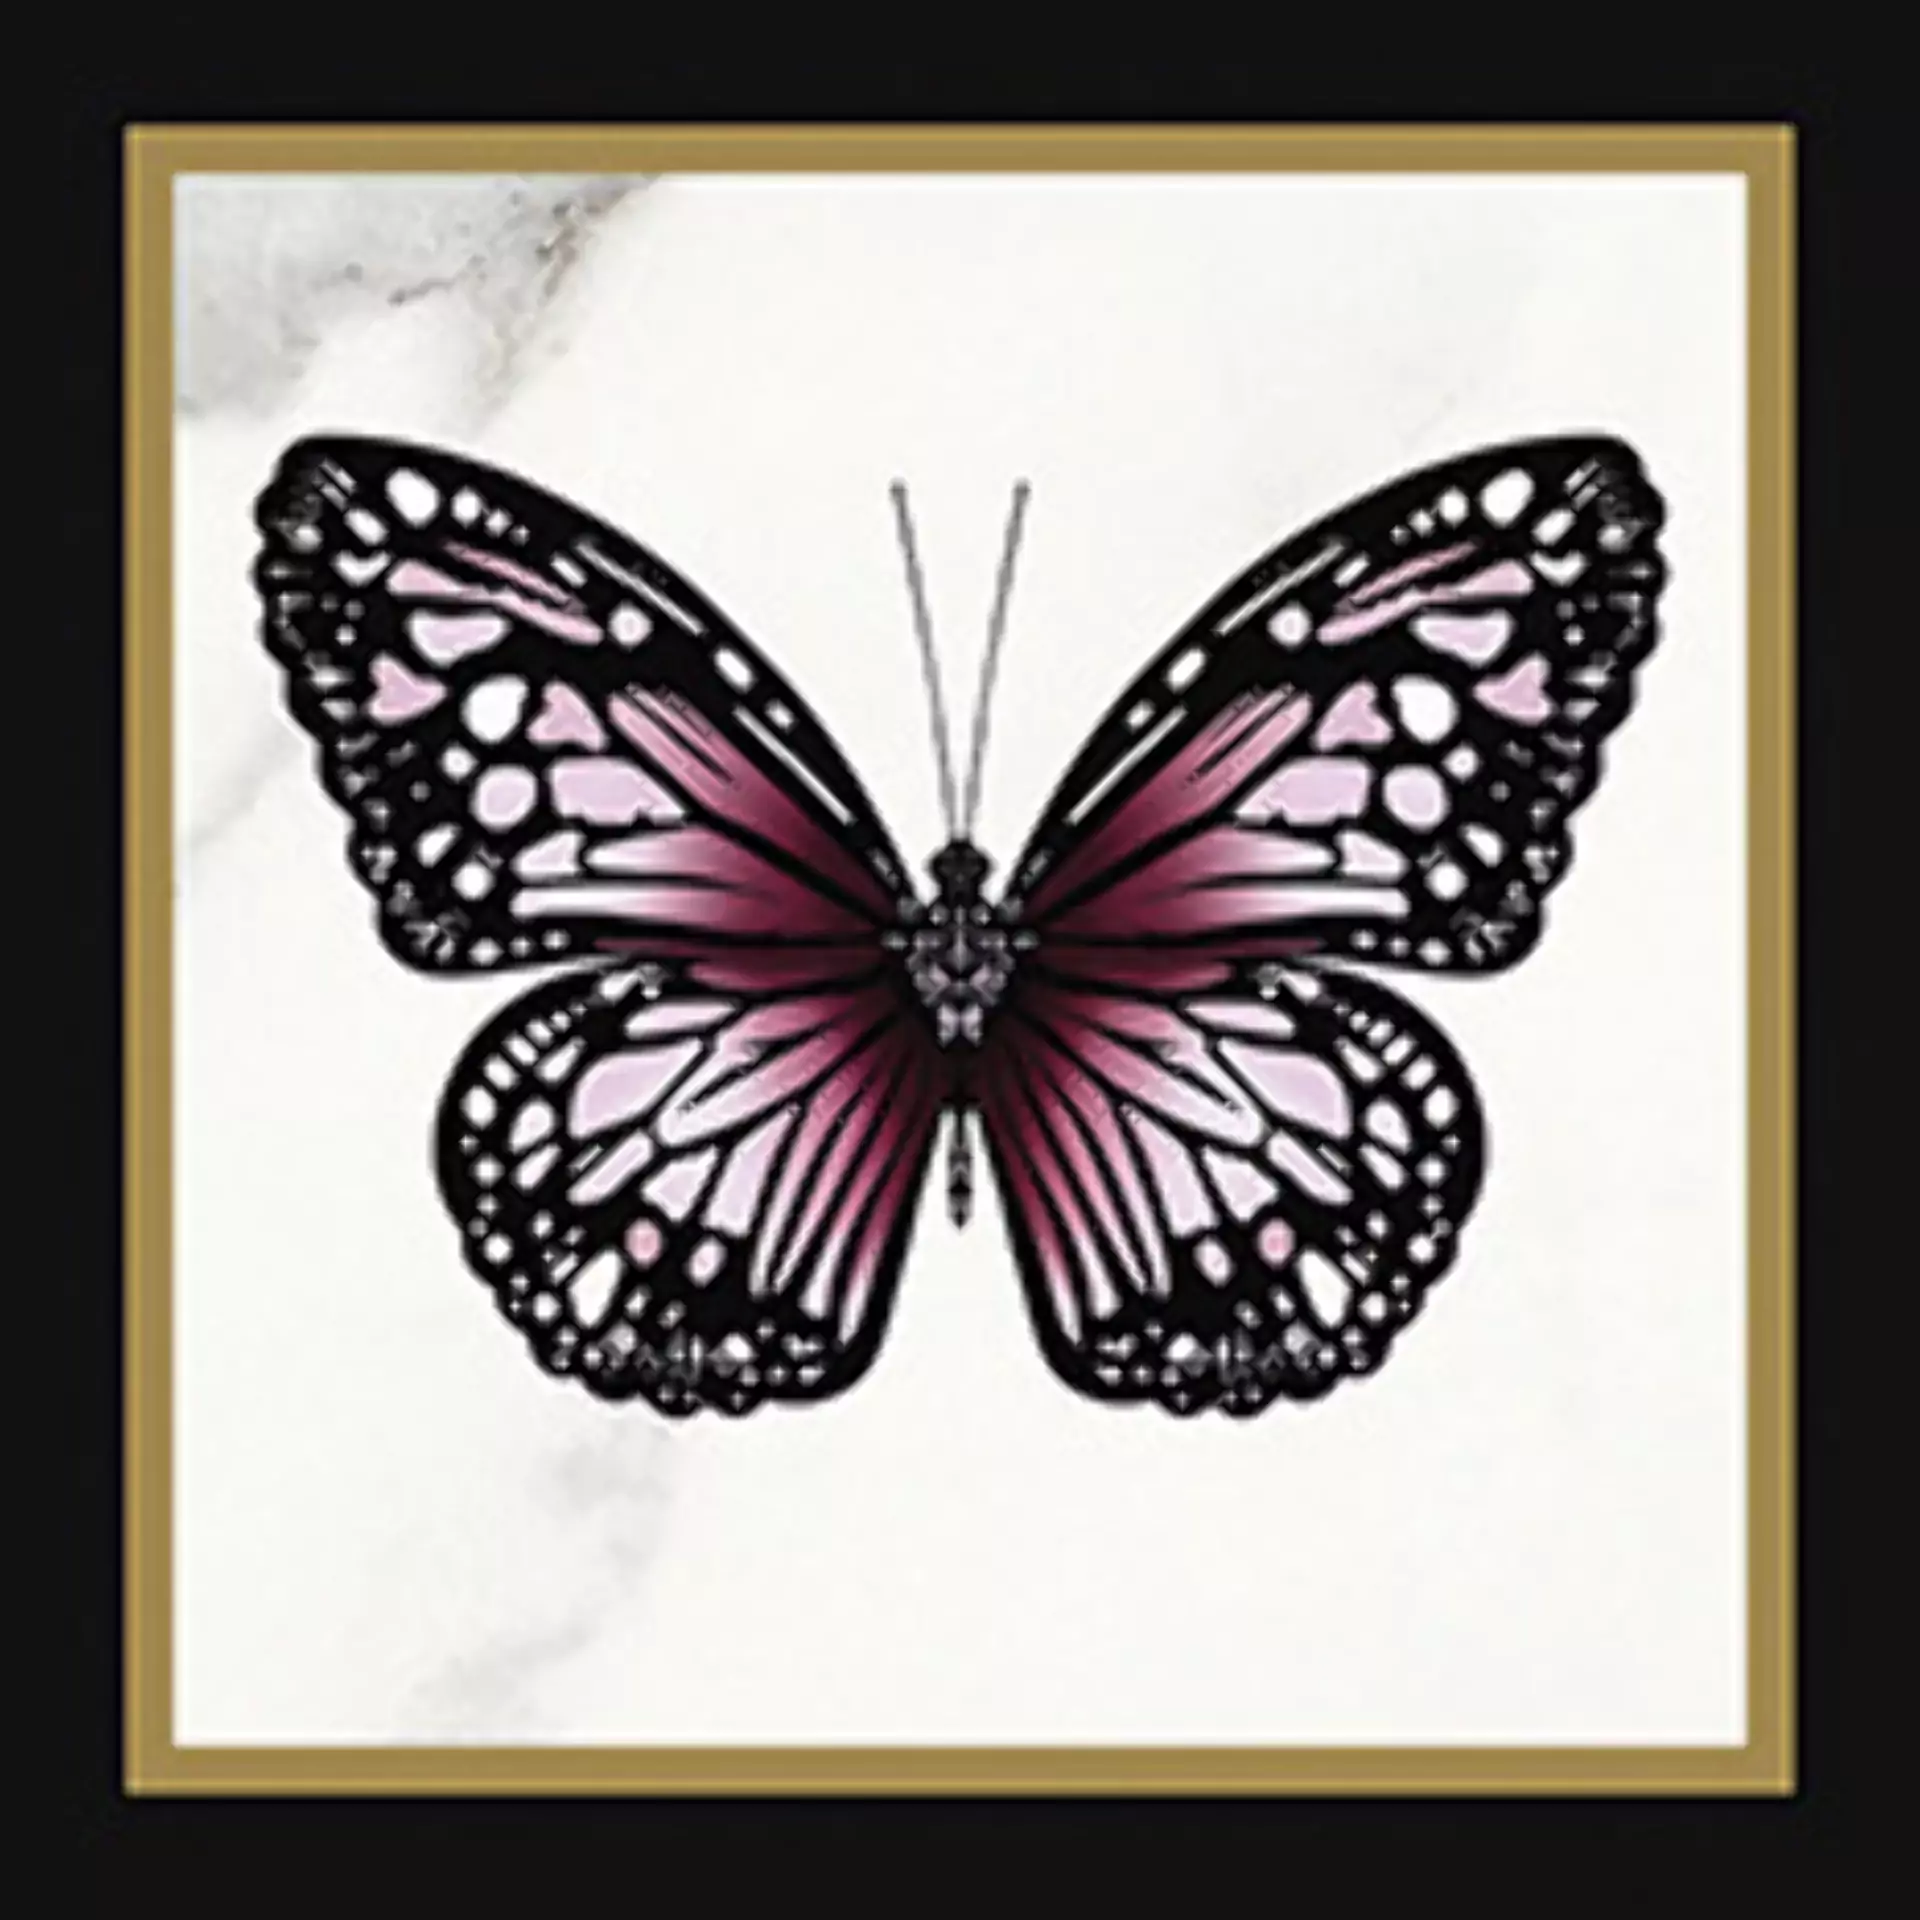 Wandfliese Villeroy & Boch Victorian Black - White Glossy Black - White 1222-MK0C glaenzend 20x20cm Dekor Butterfly rektifiziert 10mm